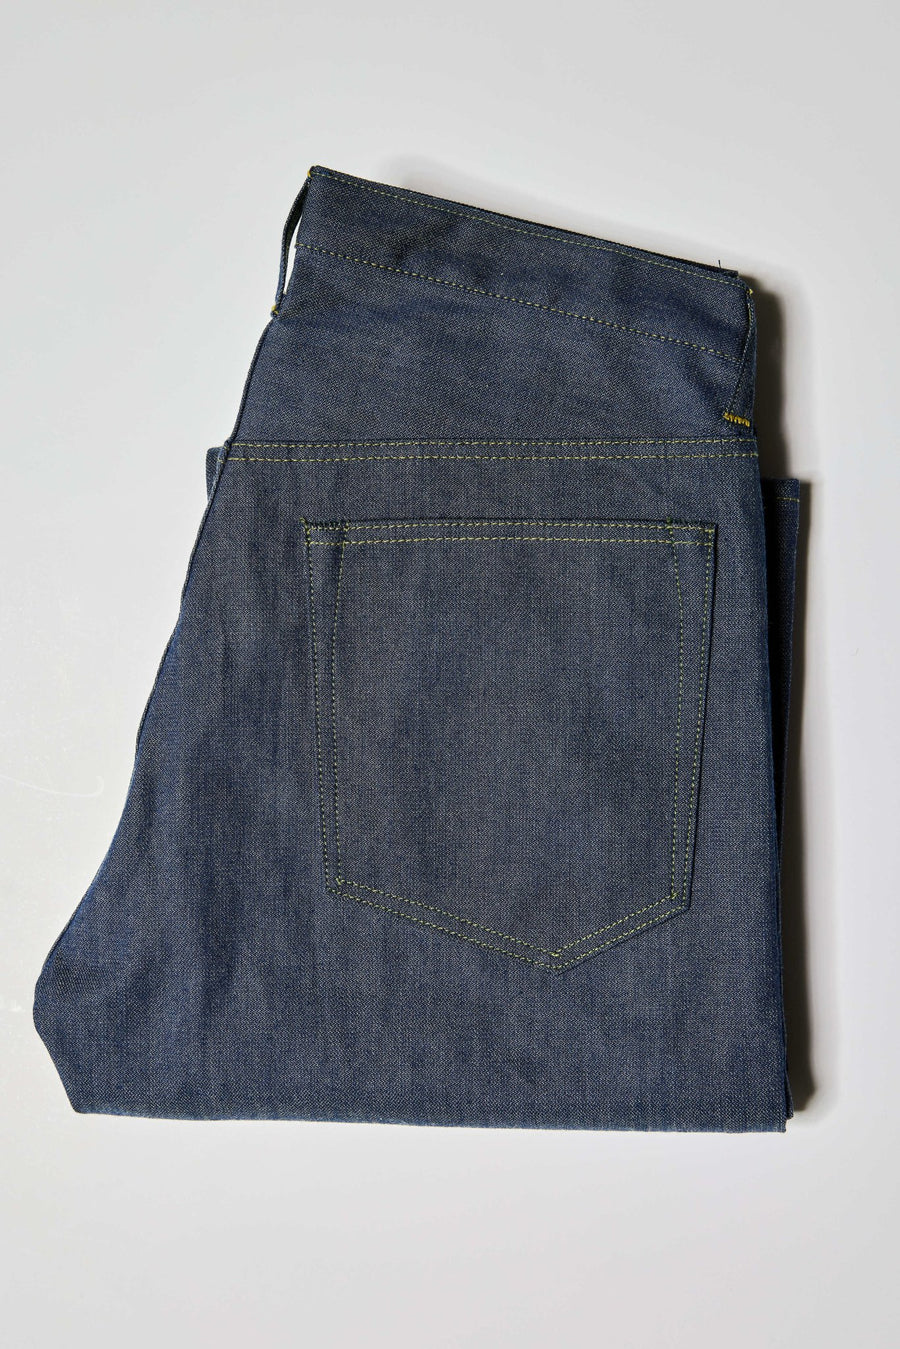 Proximity Denims x HARDENCO x HH 5-Pocket Jean -- DOUBLE KNEE